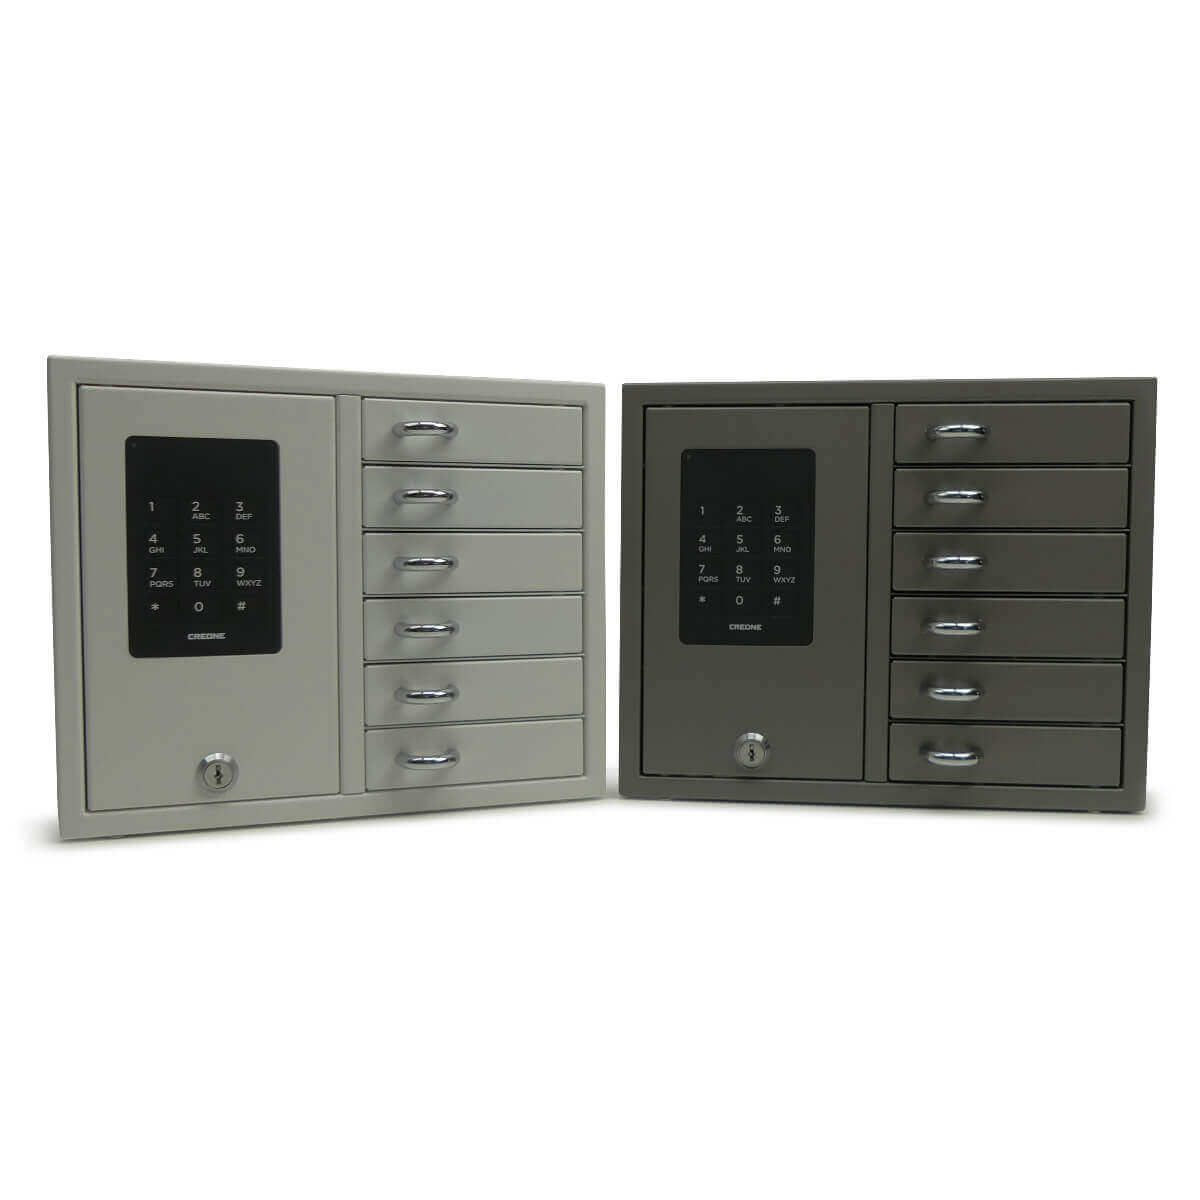 schwarze Keybox 9006 B - (Nr. 141360) BLACK Schlüsselbox mit 6 Fächern -  Fachgröße 15 cm breit, 8 cm tief, 4 cm hoch - Edelstahl und  pulverbeschichtet in Schwarz